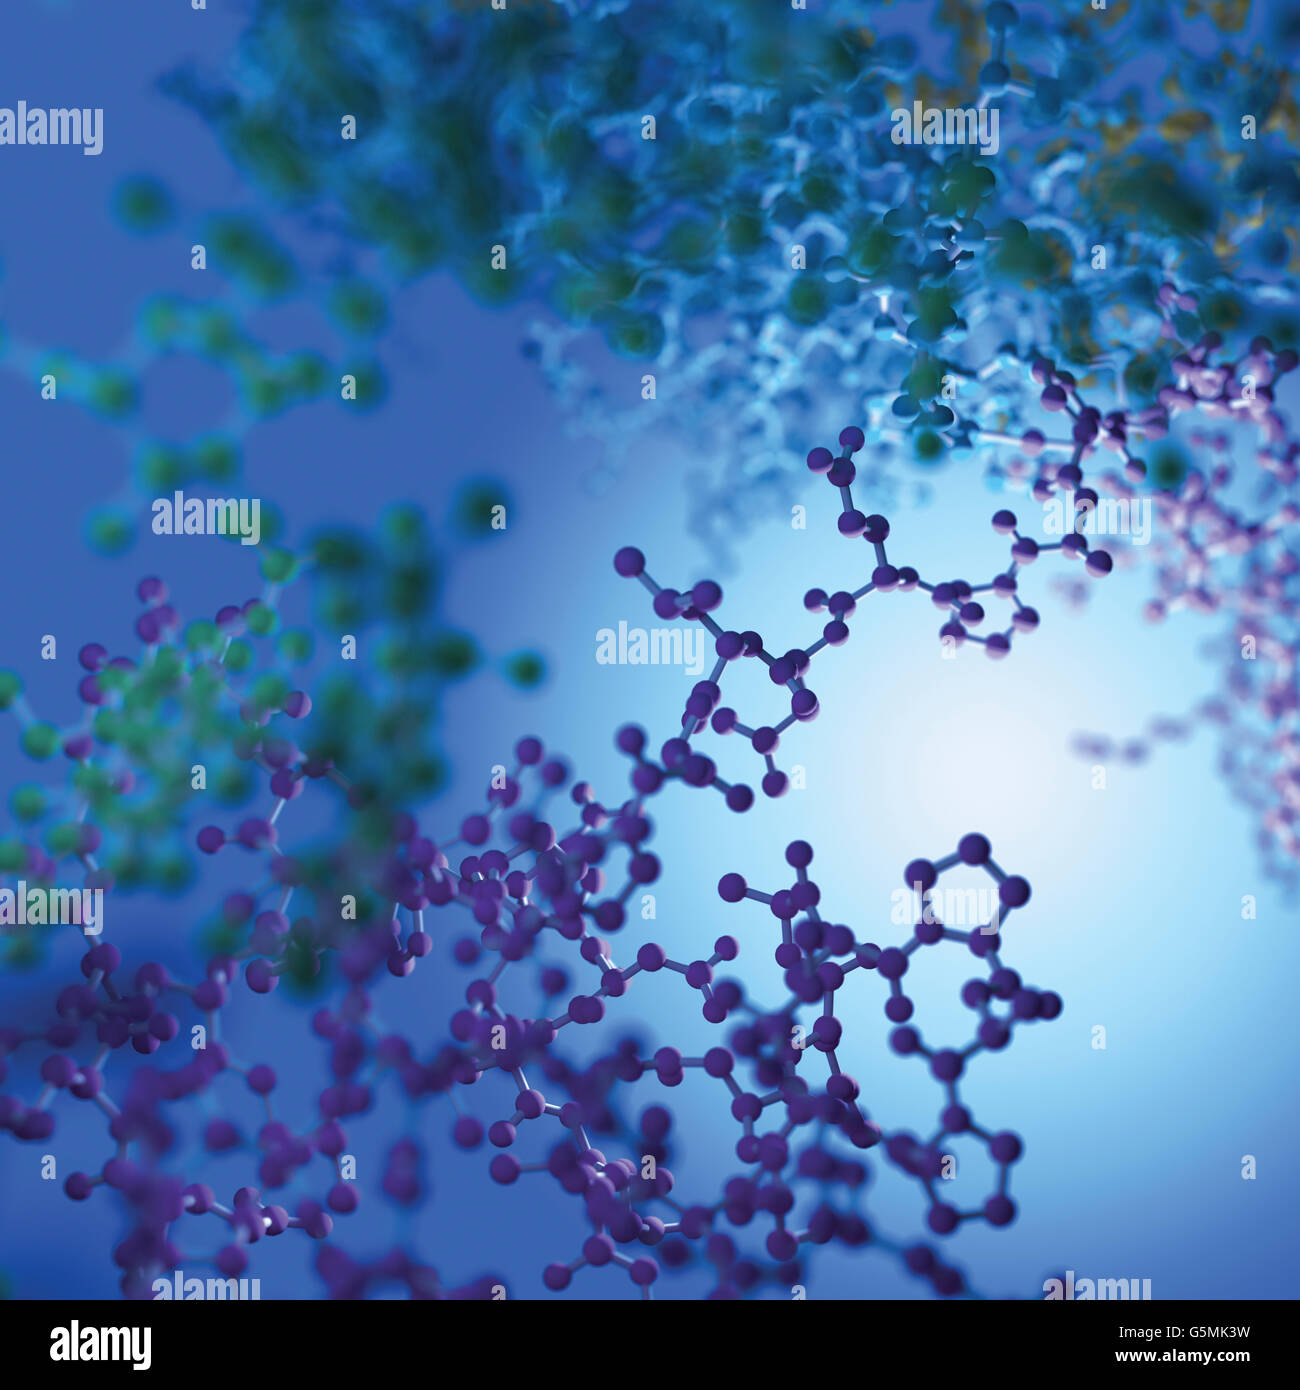 Polipeptidi Immagini e Fotos Stock - Alamy